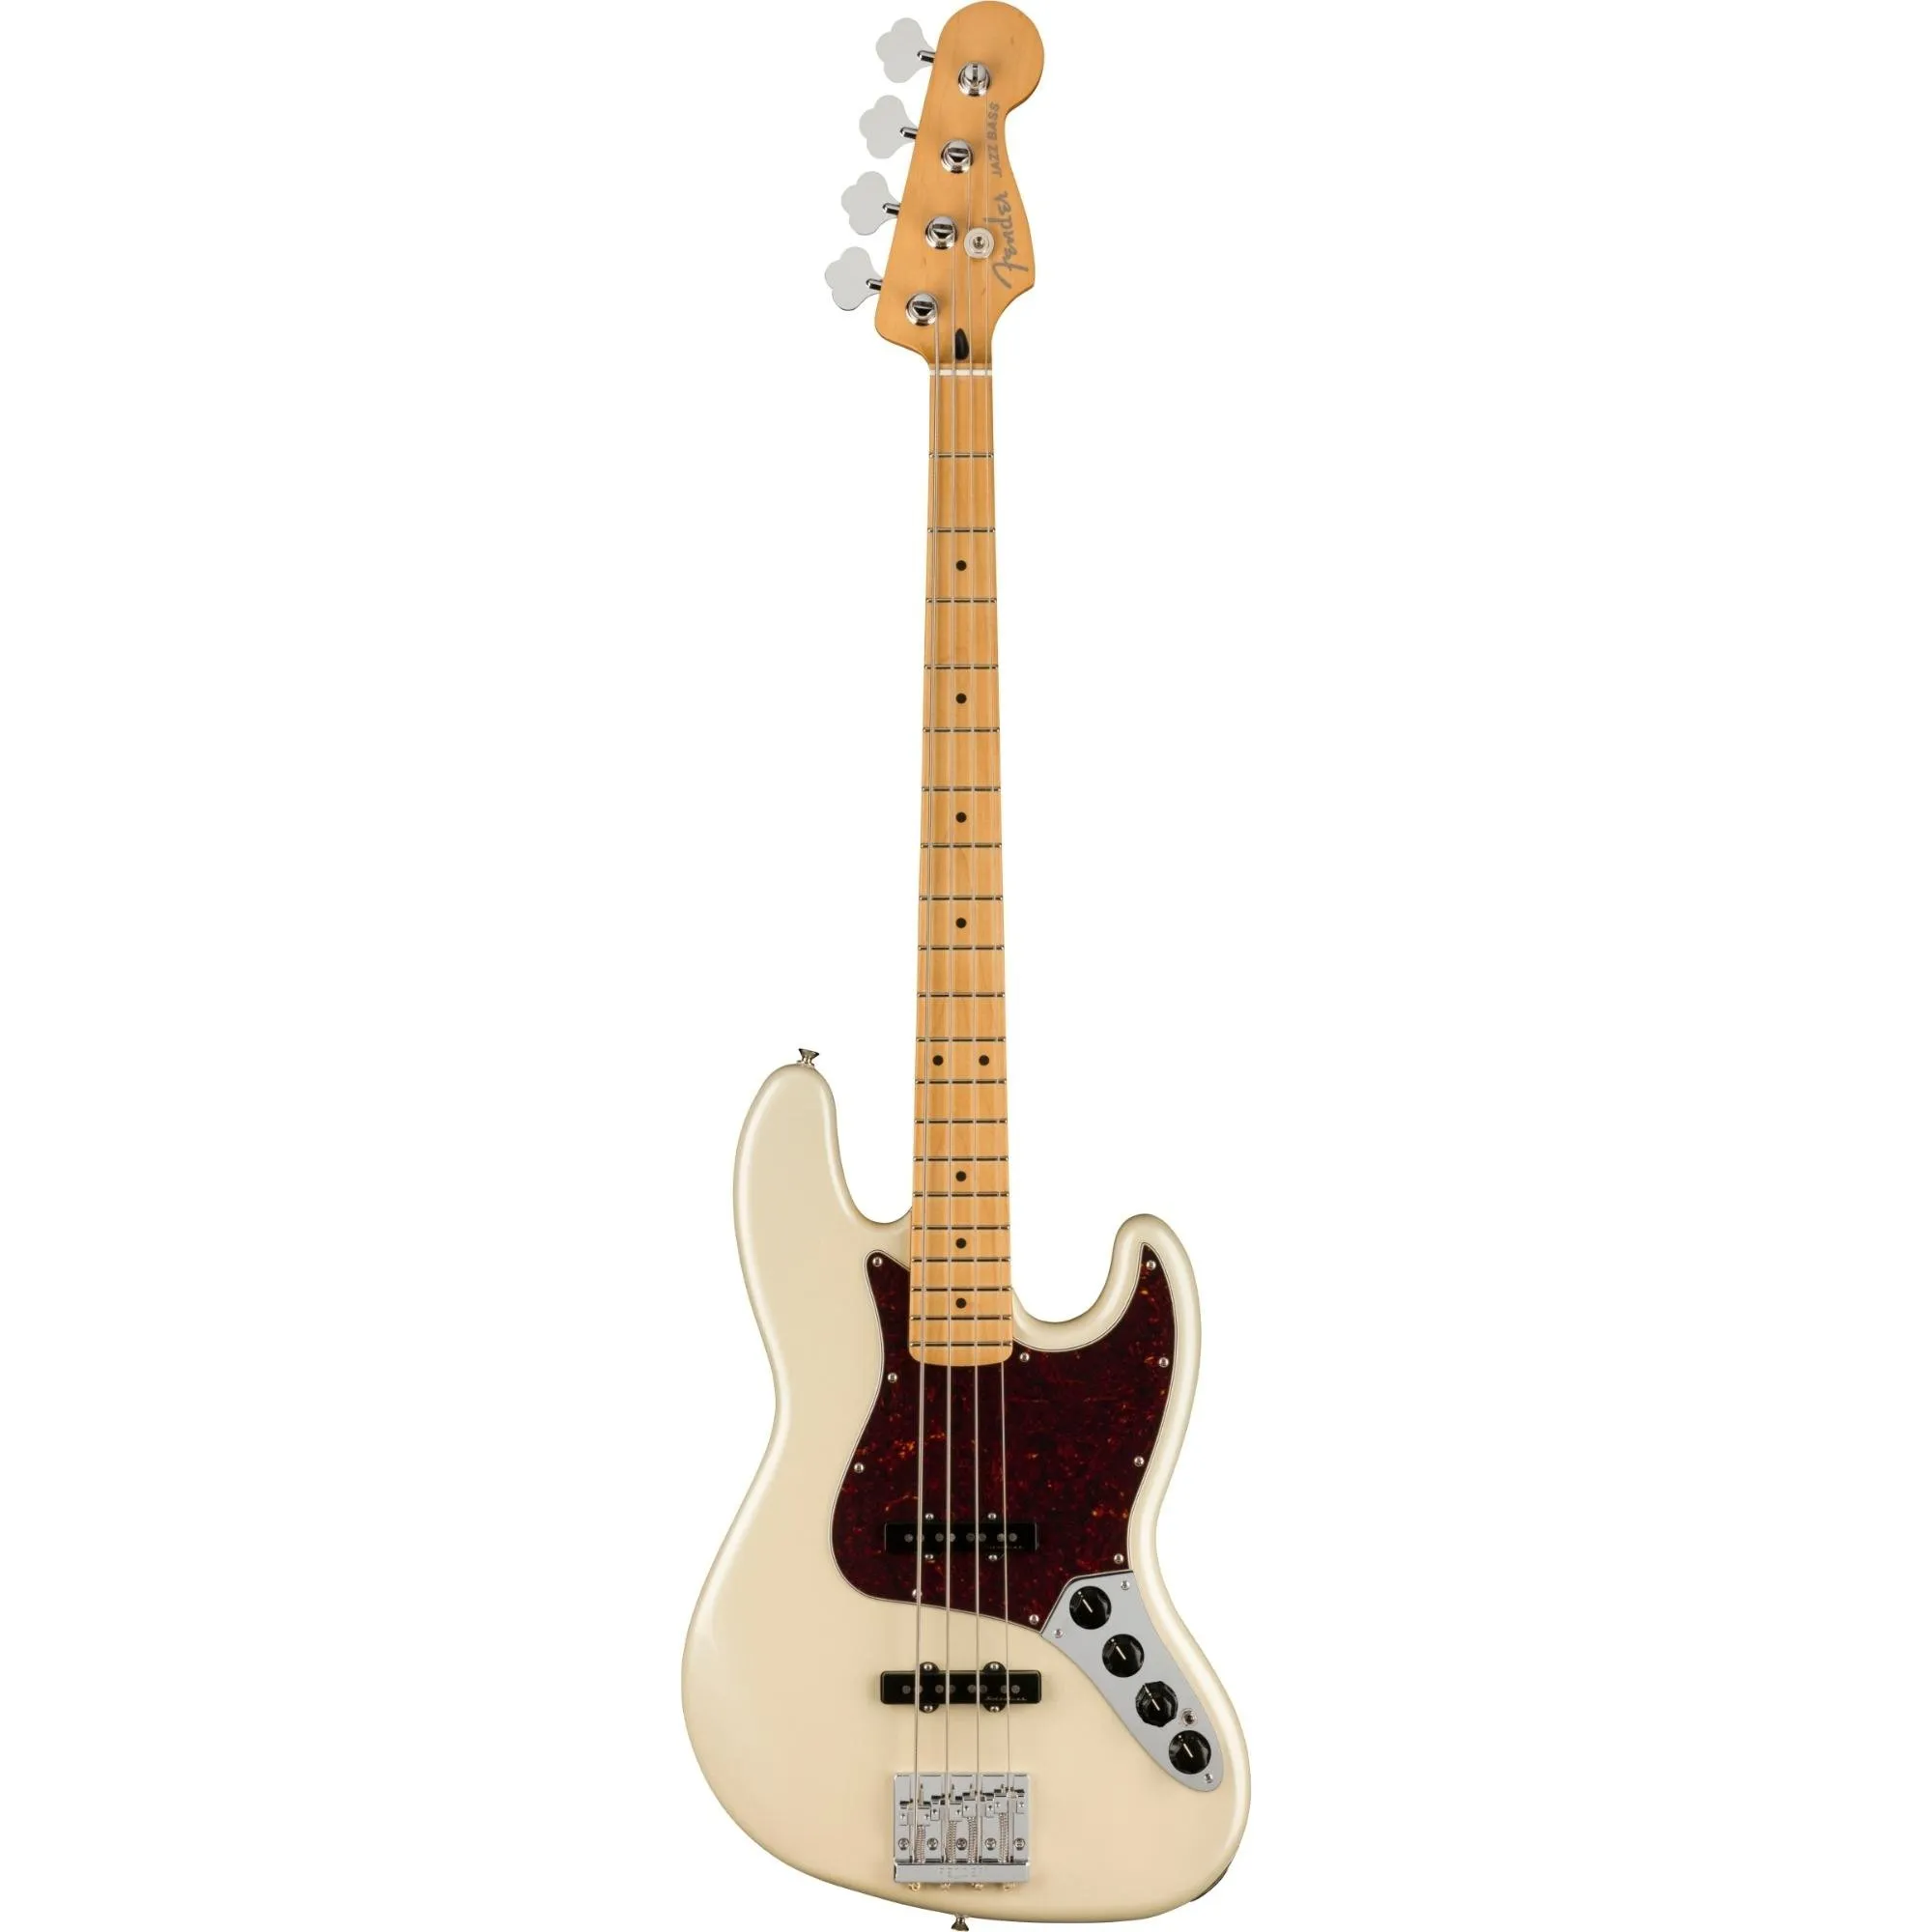 Contrabaixo Fender Player Plus Jazz Bass Olympic White com Deluxe GigBag por 12.732,99 à vista no boleto/pix ou parcele em até 12x sem juros. Compre na loja Mundomax!